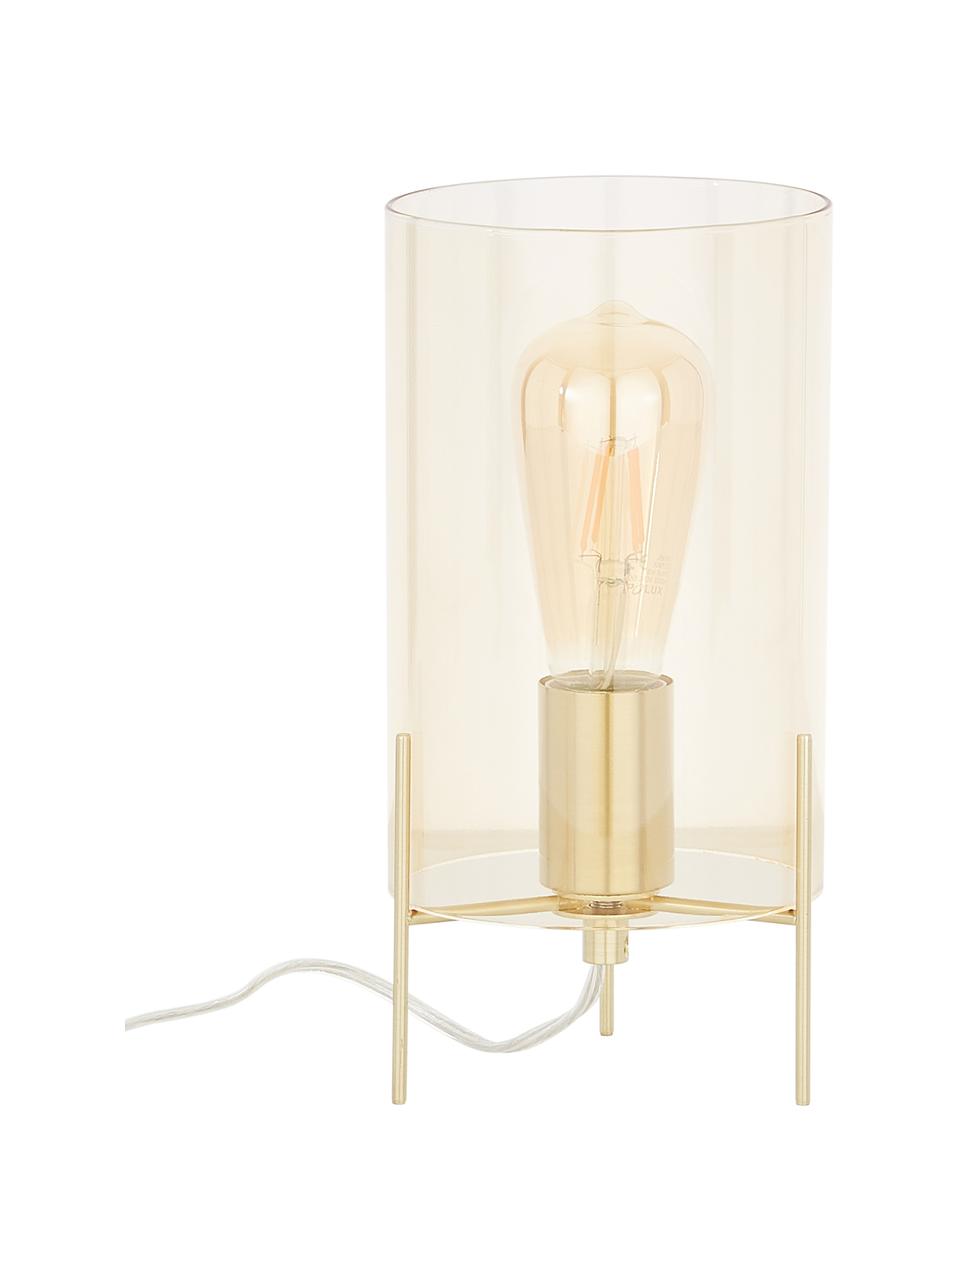 Kleine Tischlampe Laurel aus farbigem Glas, Lampenschirm: Glas, Lampenfuß: Metall, gebürstet, Bernsteinfarben, Messingfarben, Ø 14 x H 28 cm